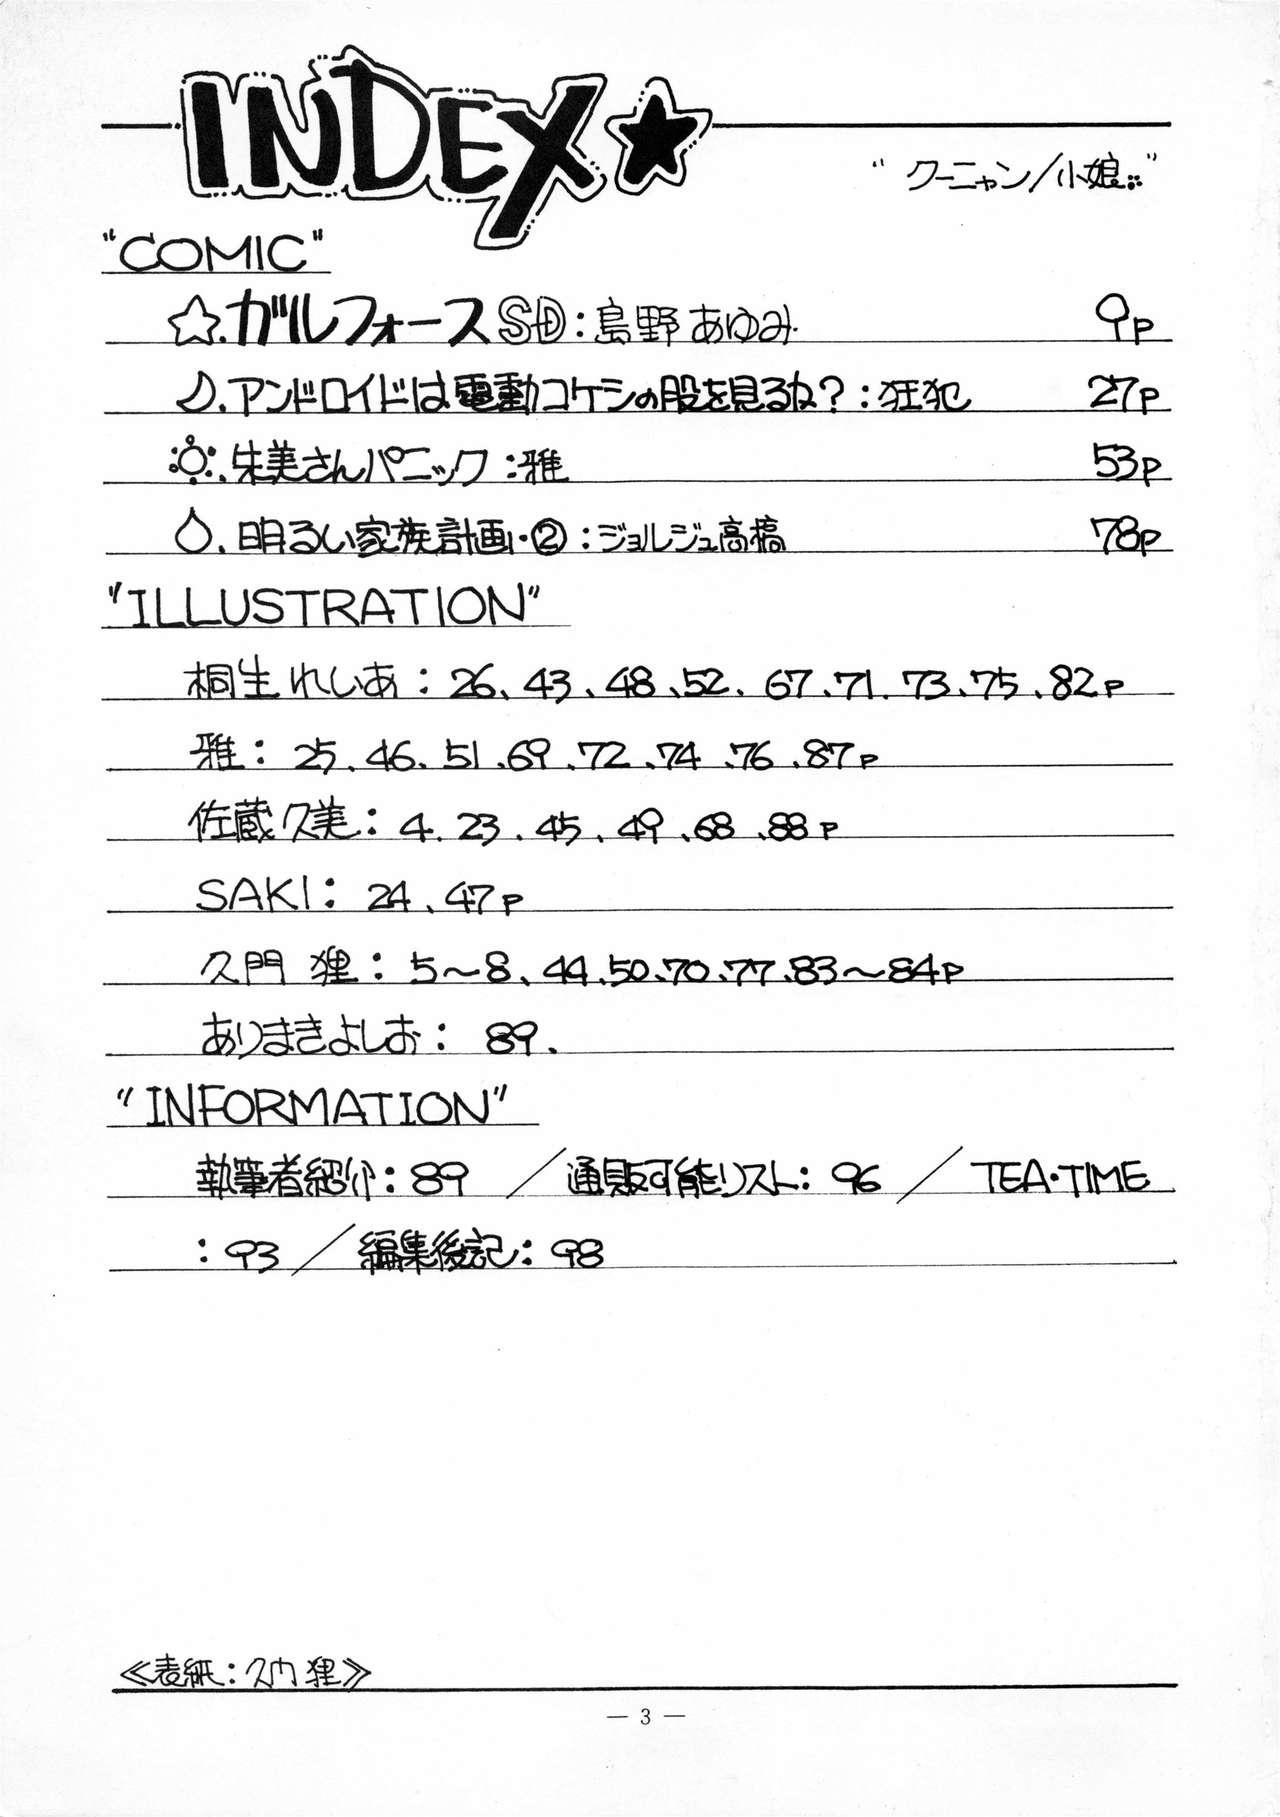 Huge Kuu nyang - Ranma 12 Urusei yatsura Fushigi no umi no nadia Maison ikkoku Youre under arrest Momotarou densetsu Gall force Cop - Page 3